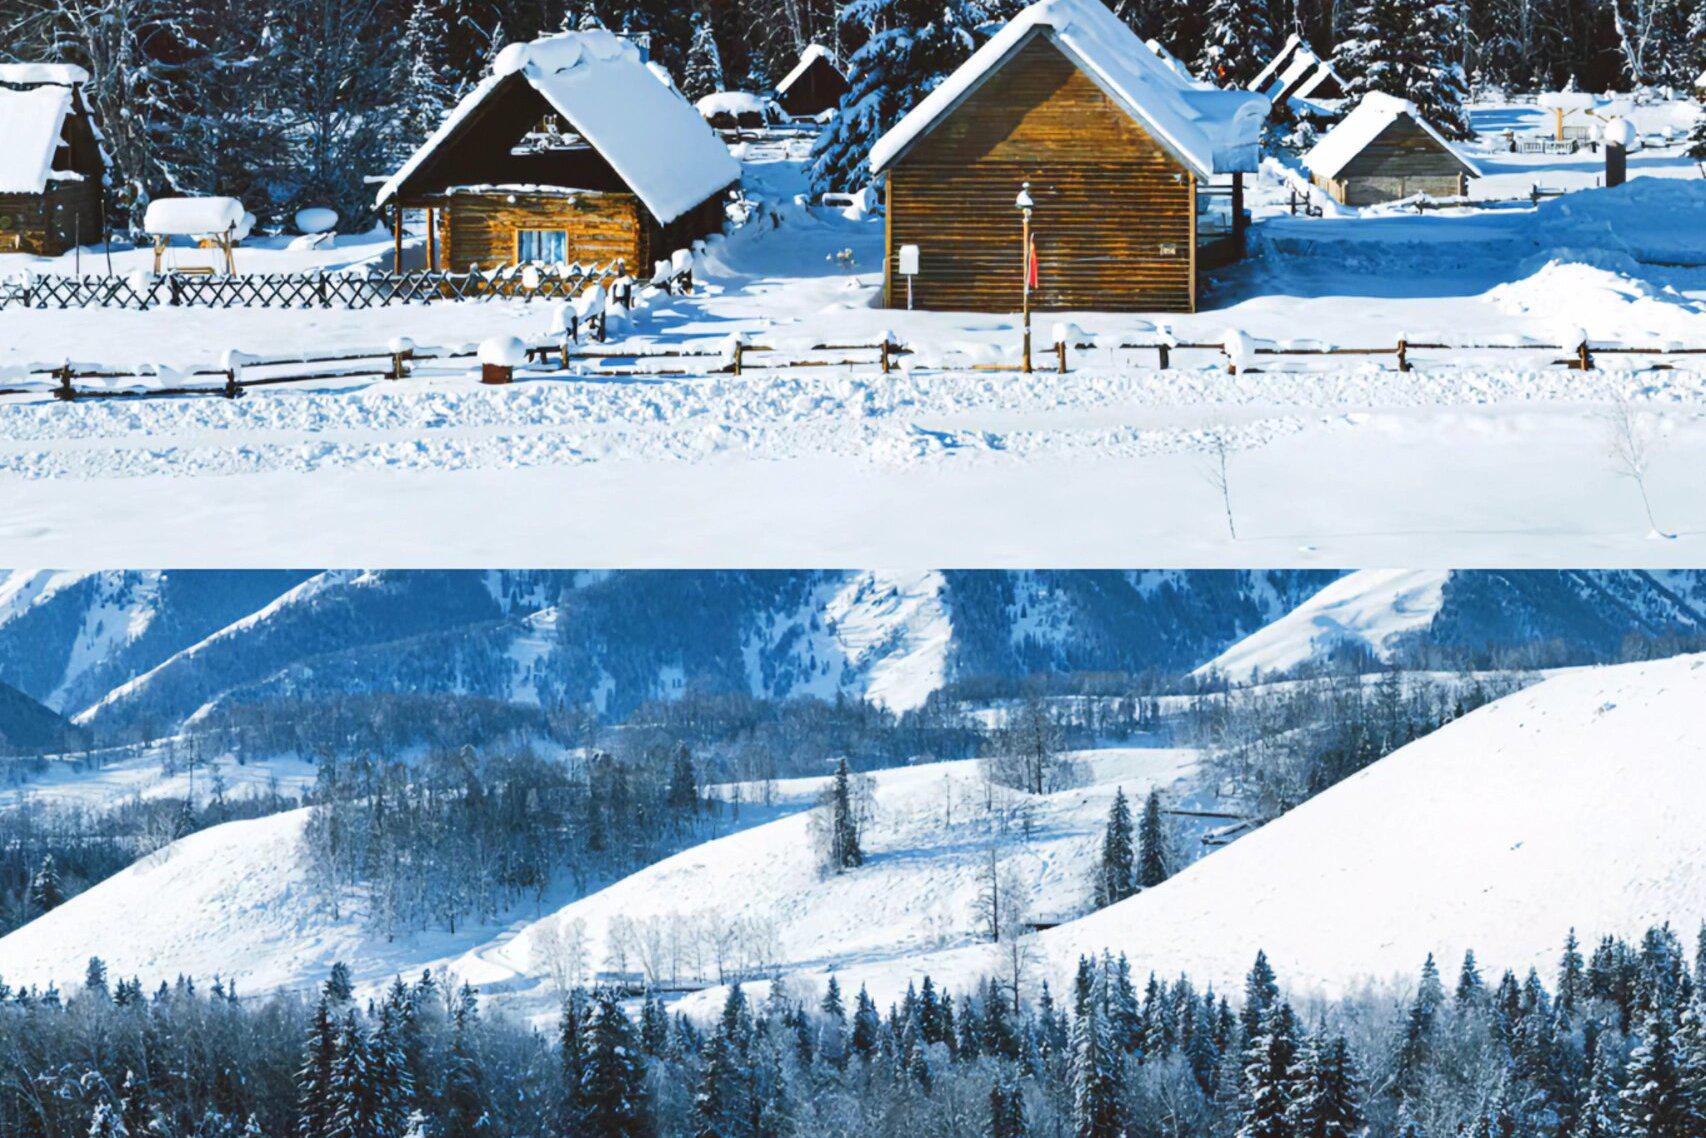 新疆冬日魔法之旅:领略纯净雪原与梦幻木屋的魅力 你是否已经厌倦了